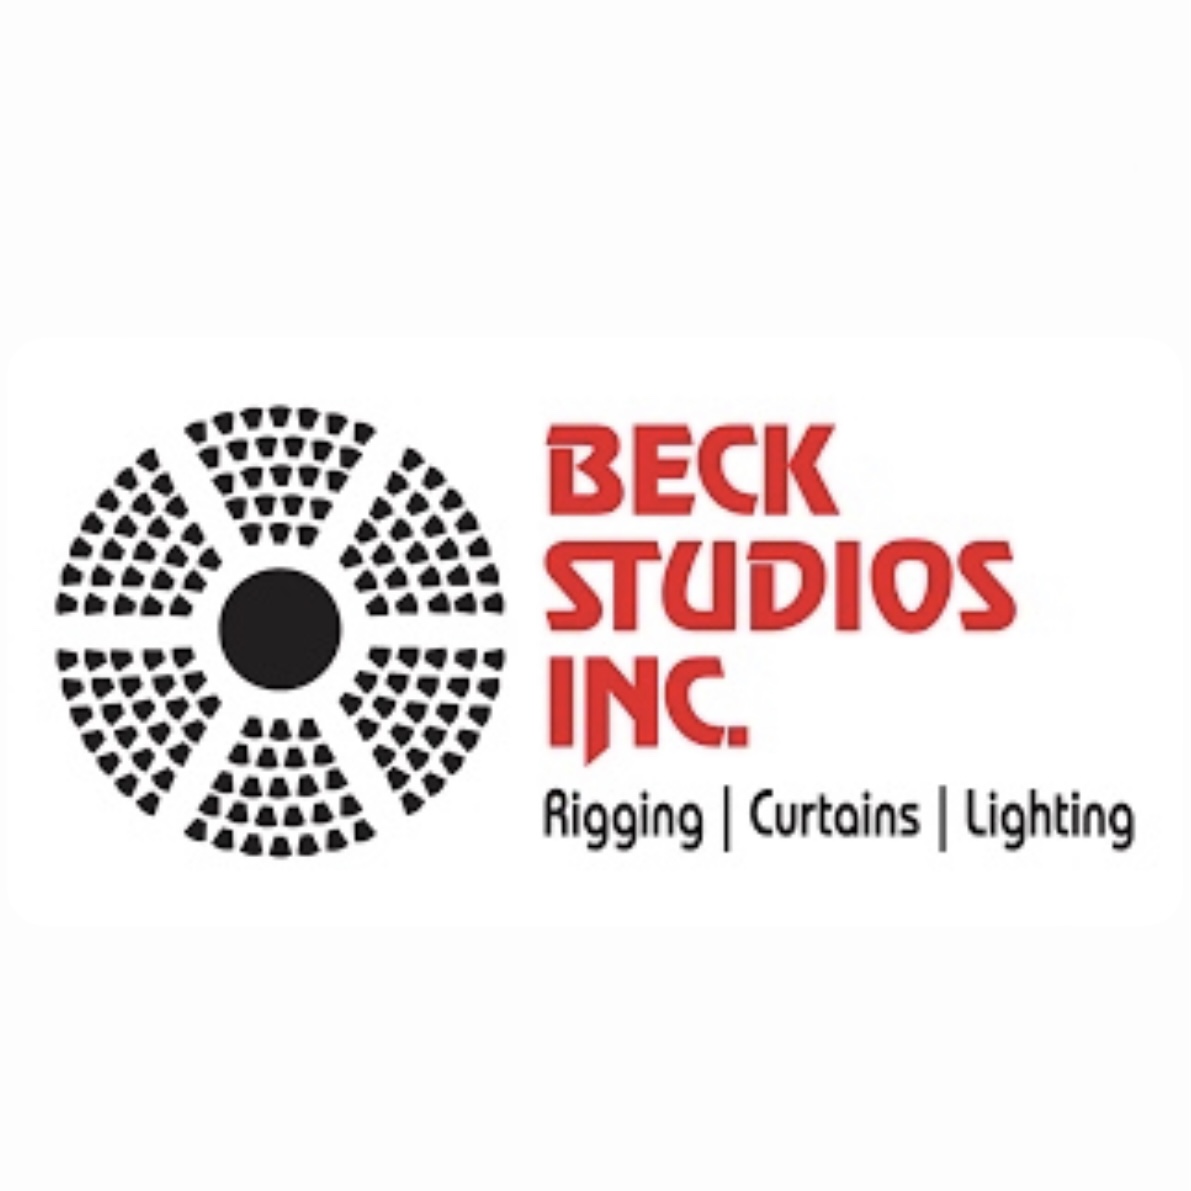 Beck Studios